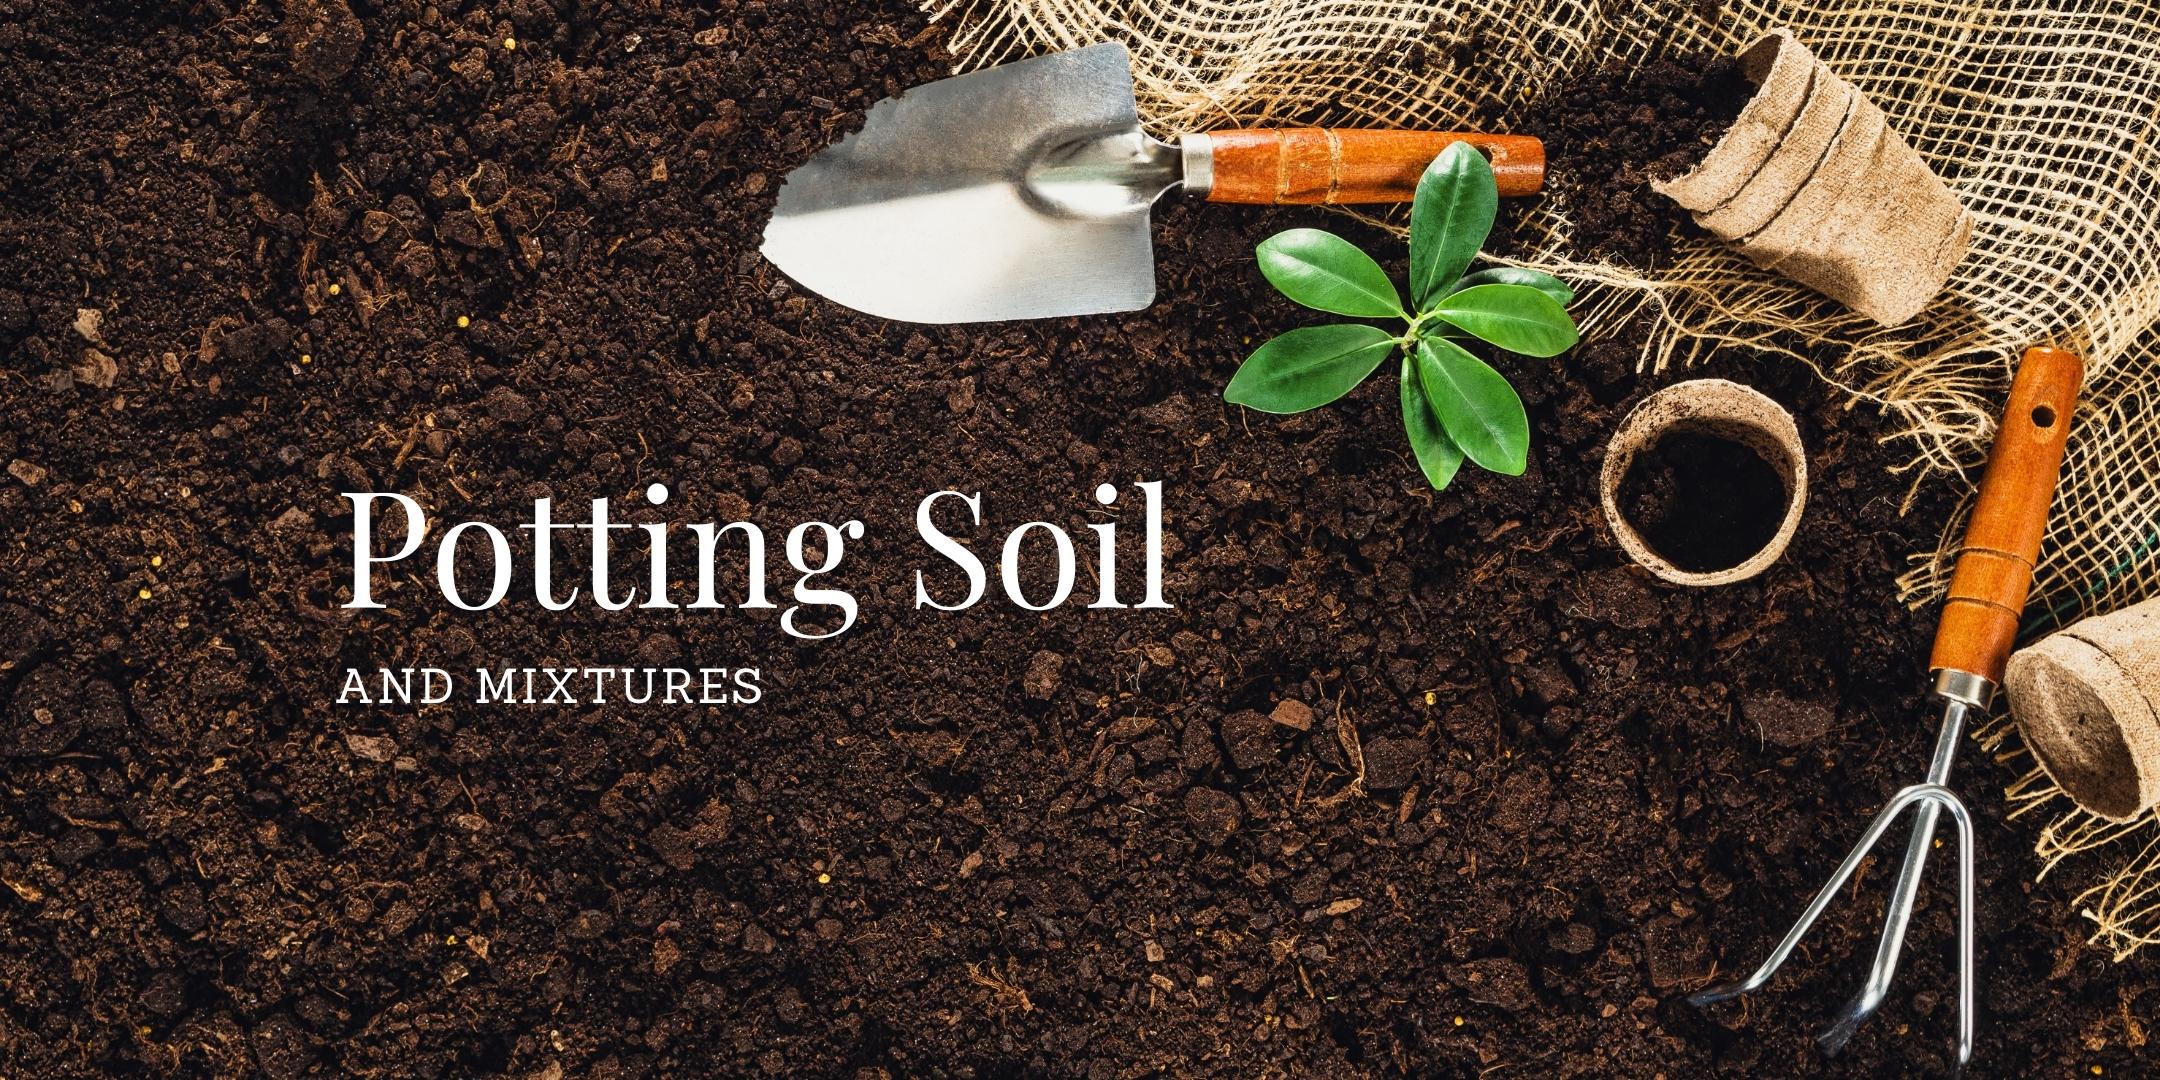 garden soil online,potting mix online,potting soil online